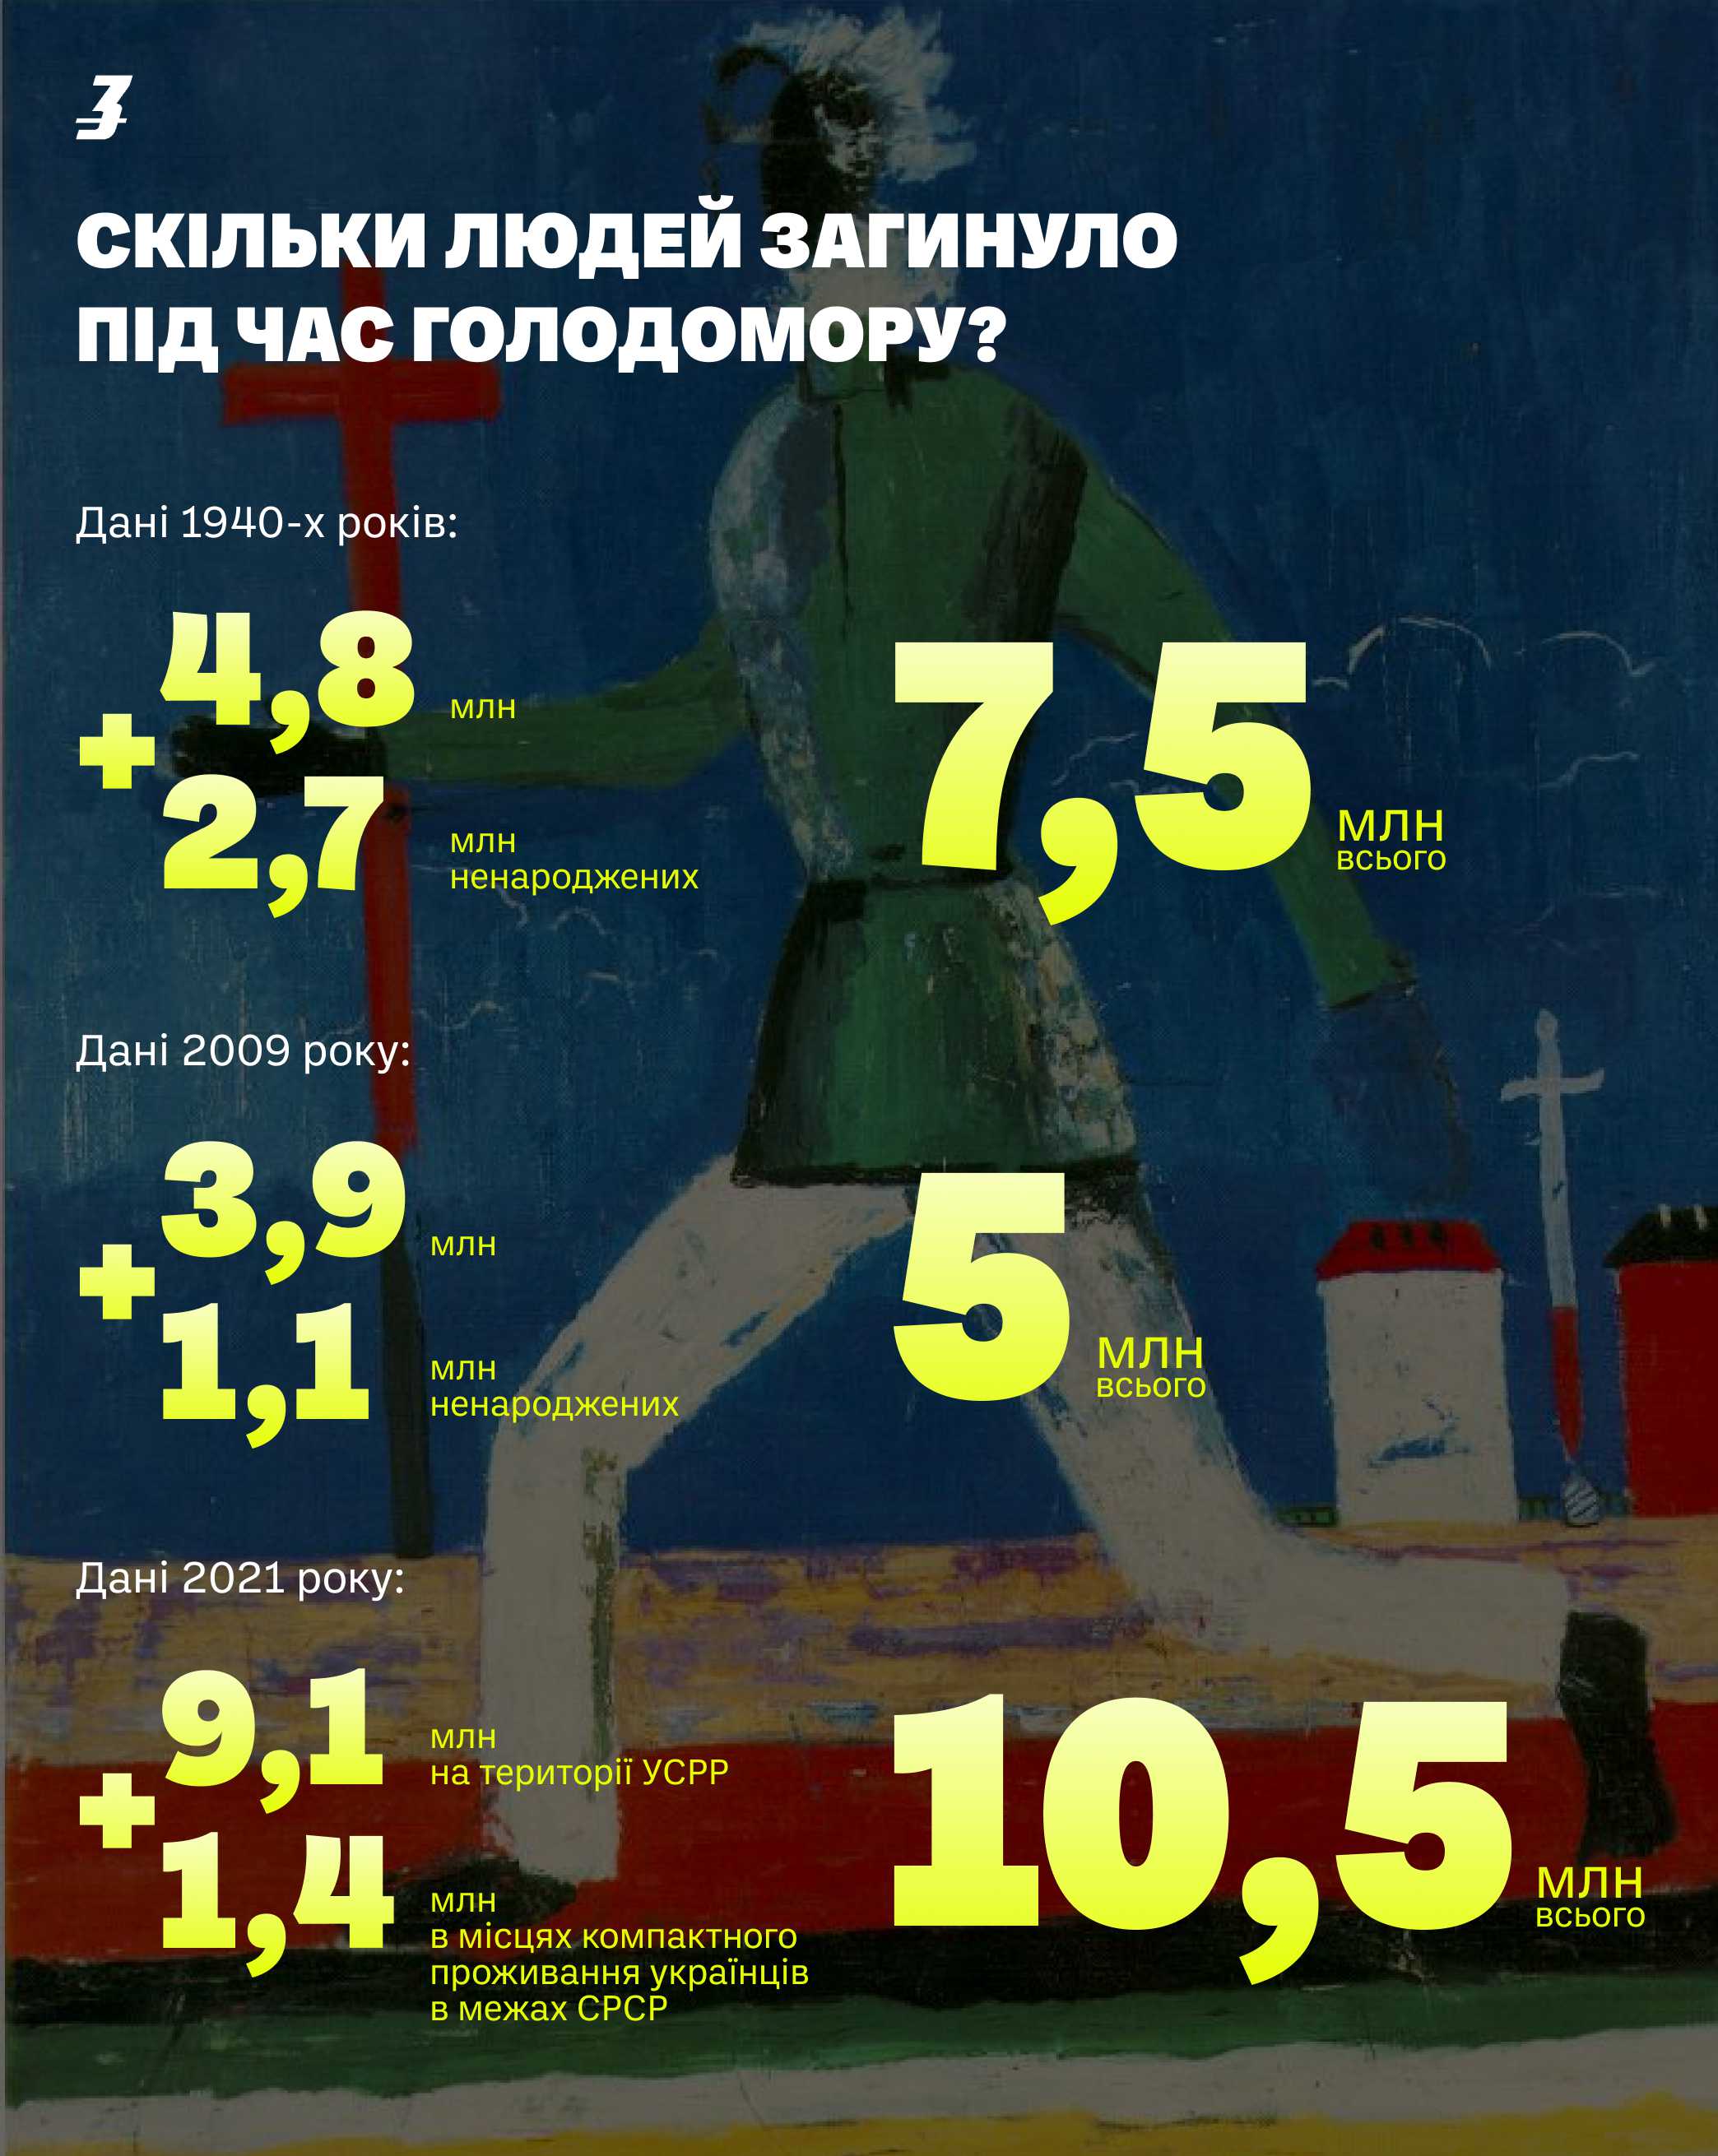 В Україні досі запекло сперечаються, скільки людей загинуло під час Голодомору. Разом зі спеціалістами розбираємося, чому так відбувається та яка цифра максимально наближена до реальної